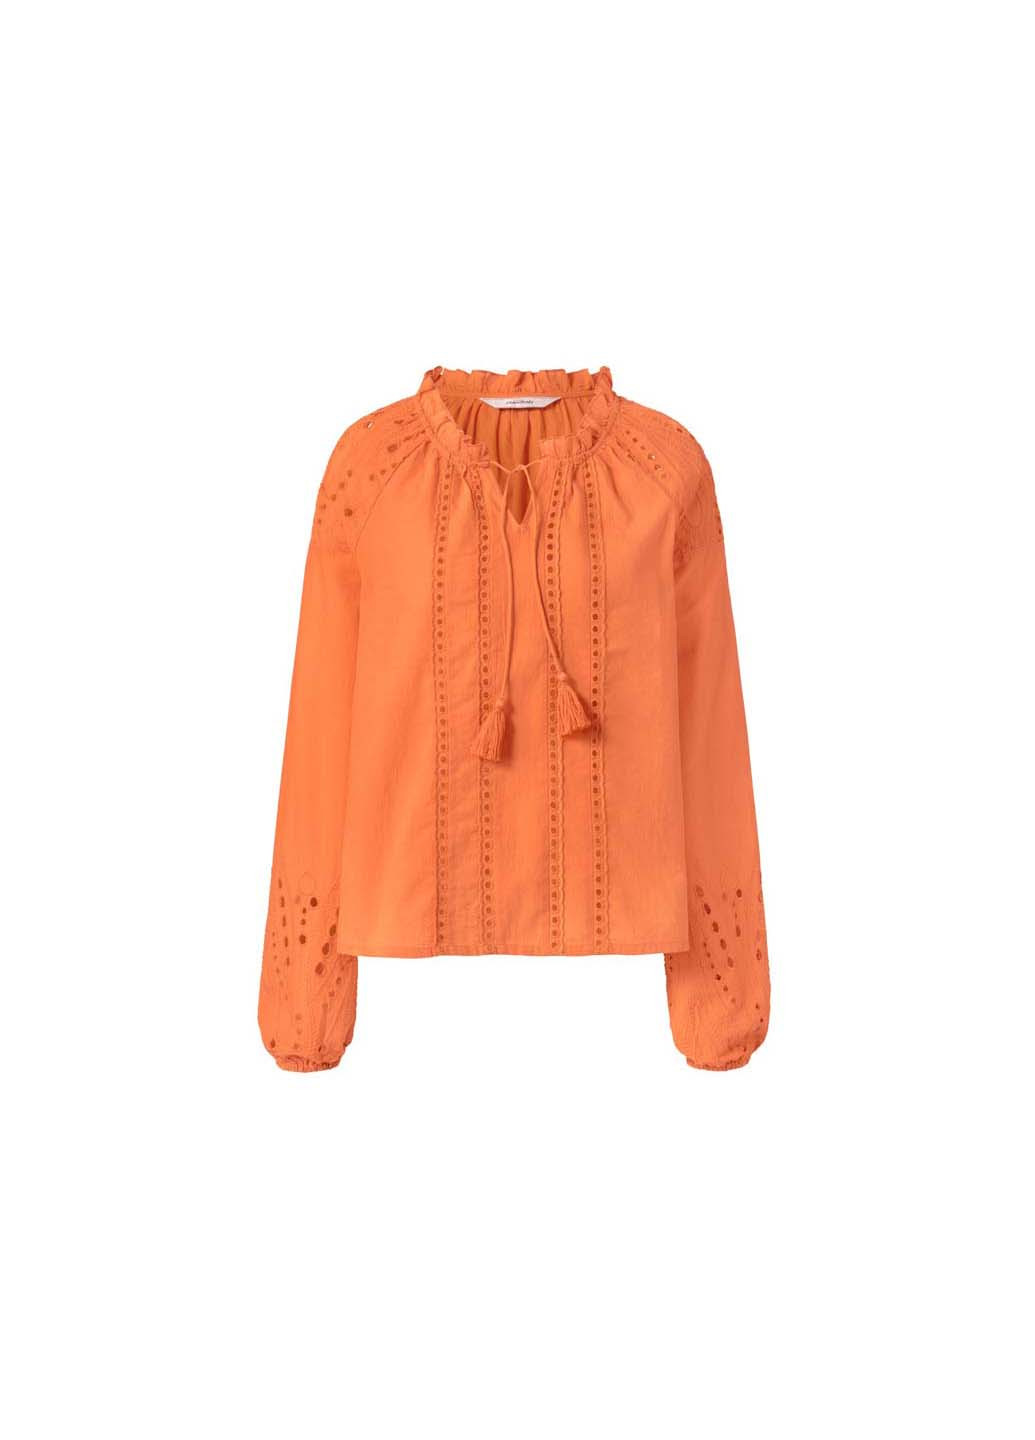 Оранжевая блуза Tchibo T1679011098